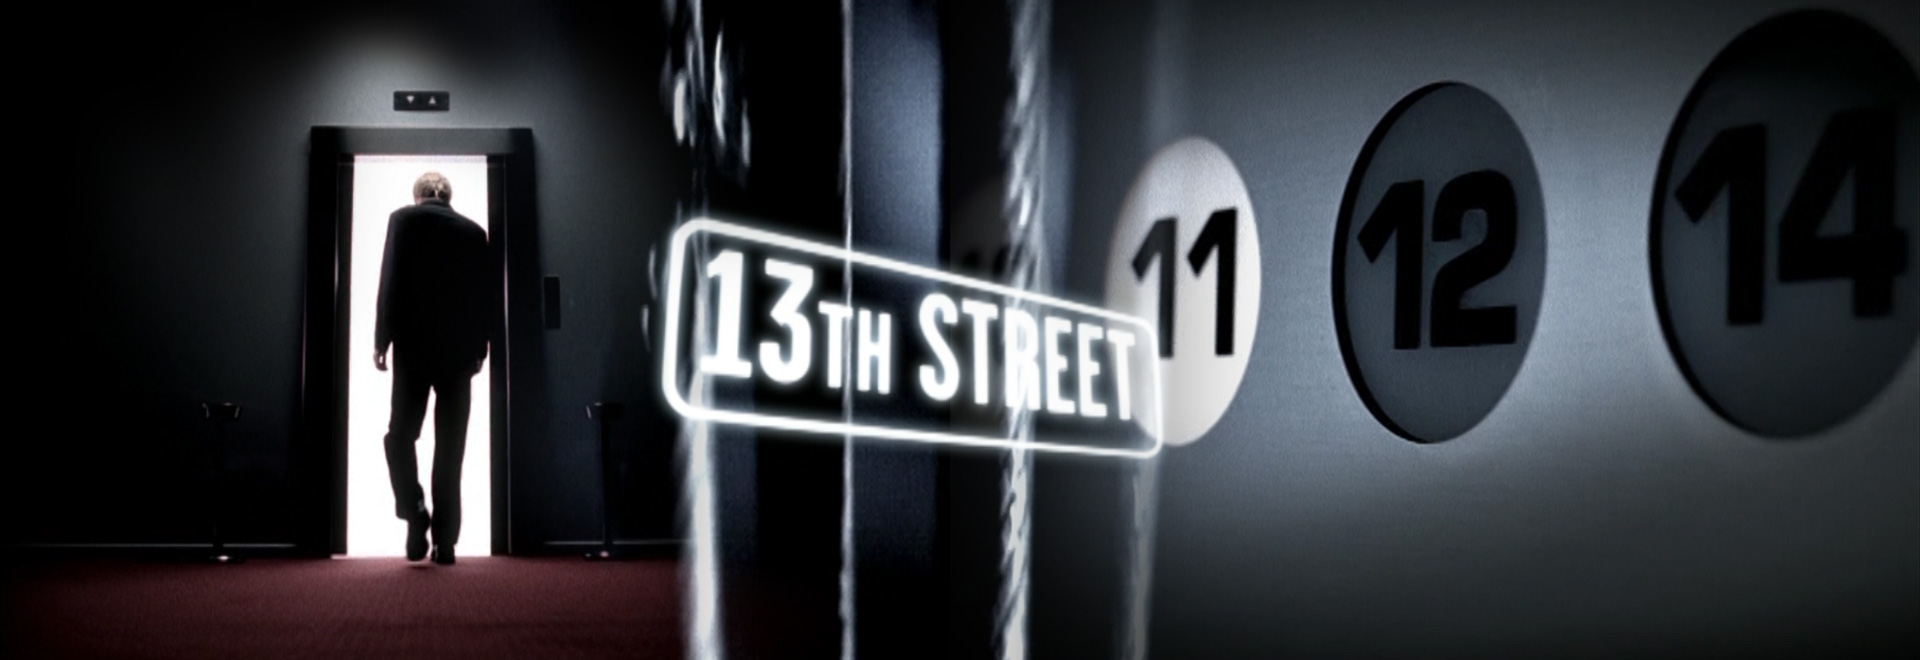 js-filmproduction-postproduction-design-13thStreeet-Elevator-collage